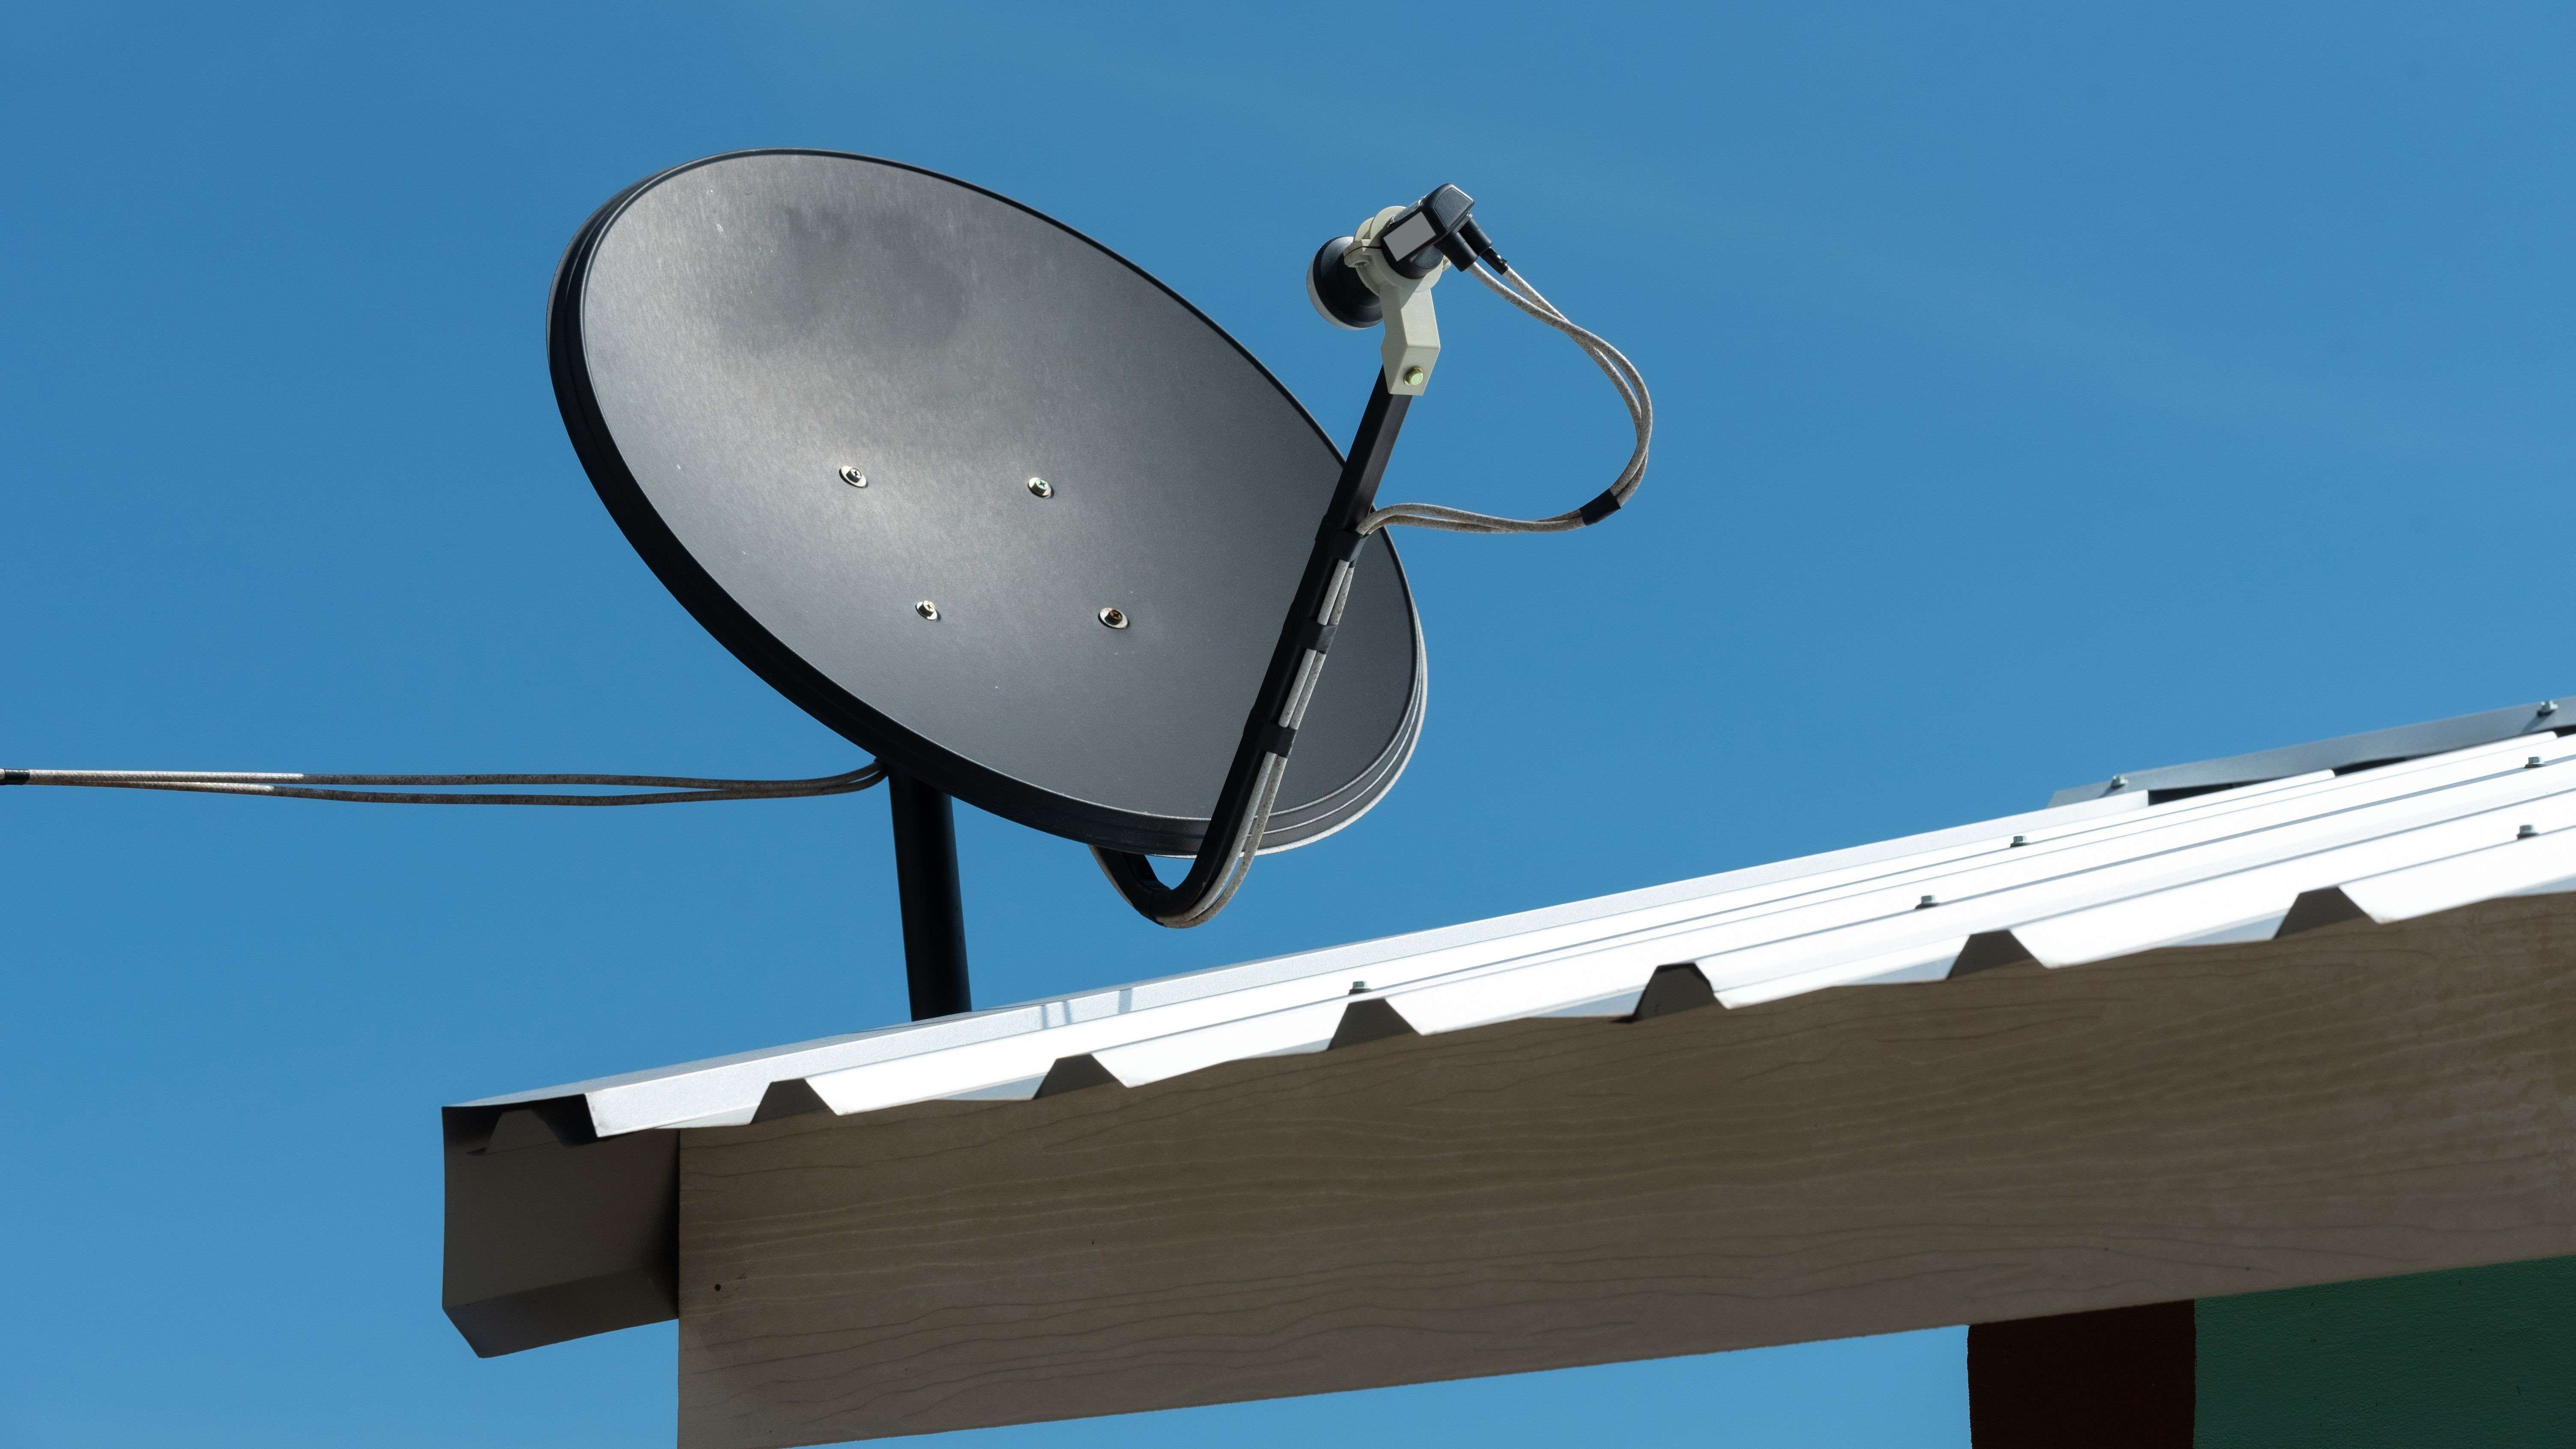 Cómo instalar una antena parabólica?